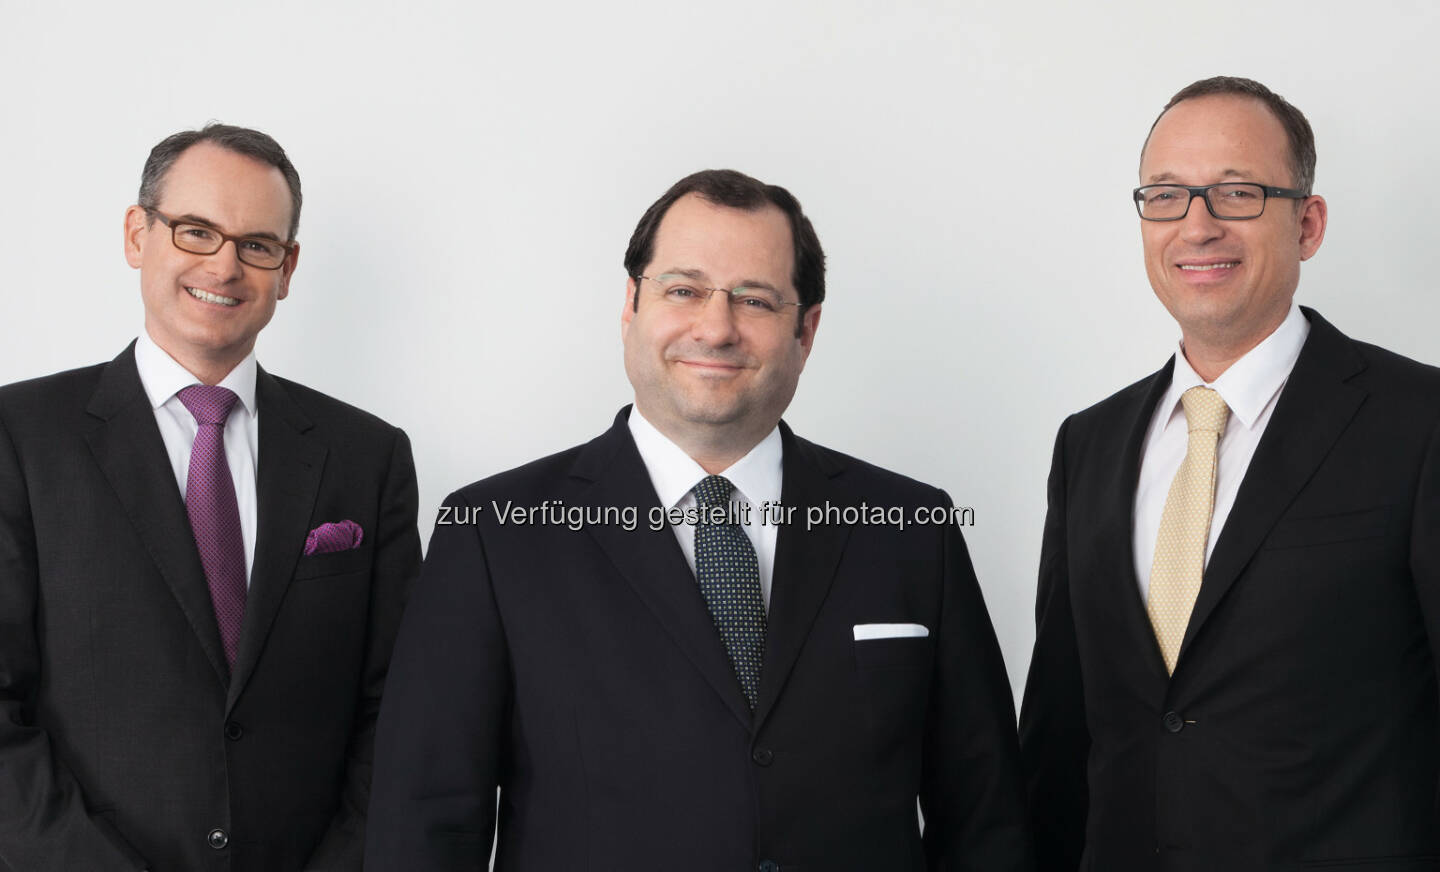 Herwig Teufelsdorfer (COO), Daniel Riedl (CEO), Ronald Roos (CFO) : Die Buwog AG blickt auf ein außerordentlich erfolgreiches Geschäftsjahr 2014/15 zurück und erwirtschaftete ein operatives Ergebnis in Höhe von EUR 158,5 Mio. (Vorjahr EUR 97,3 Mio.) Dies entspricht einer Steigerung von 62,9% : Fotocredit: Buwog AG